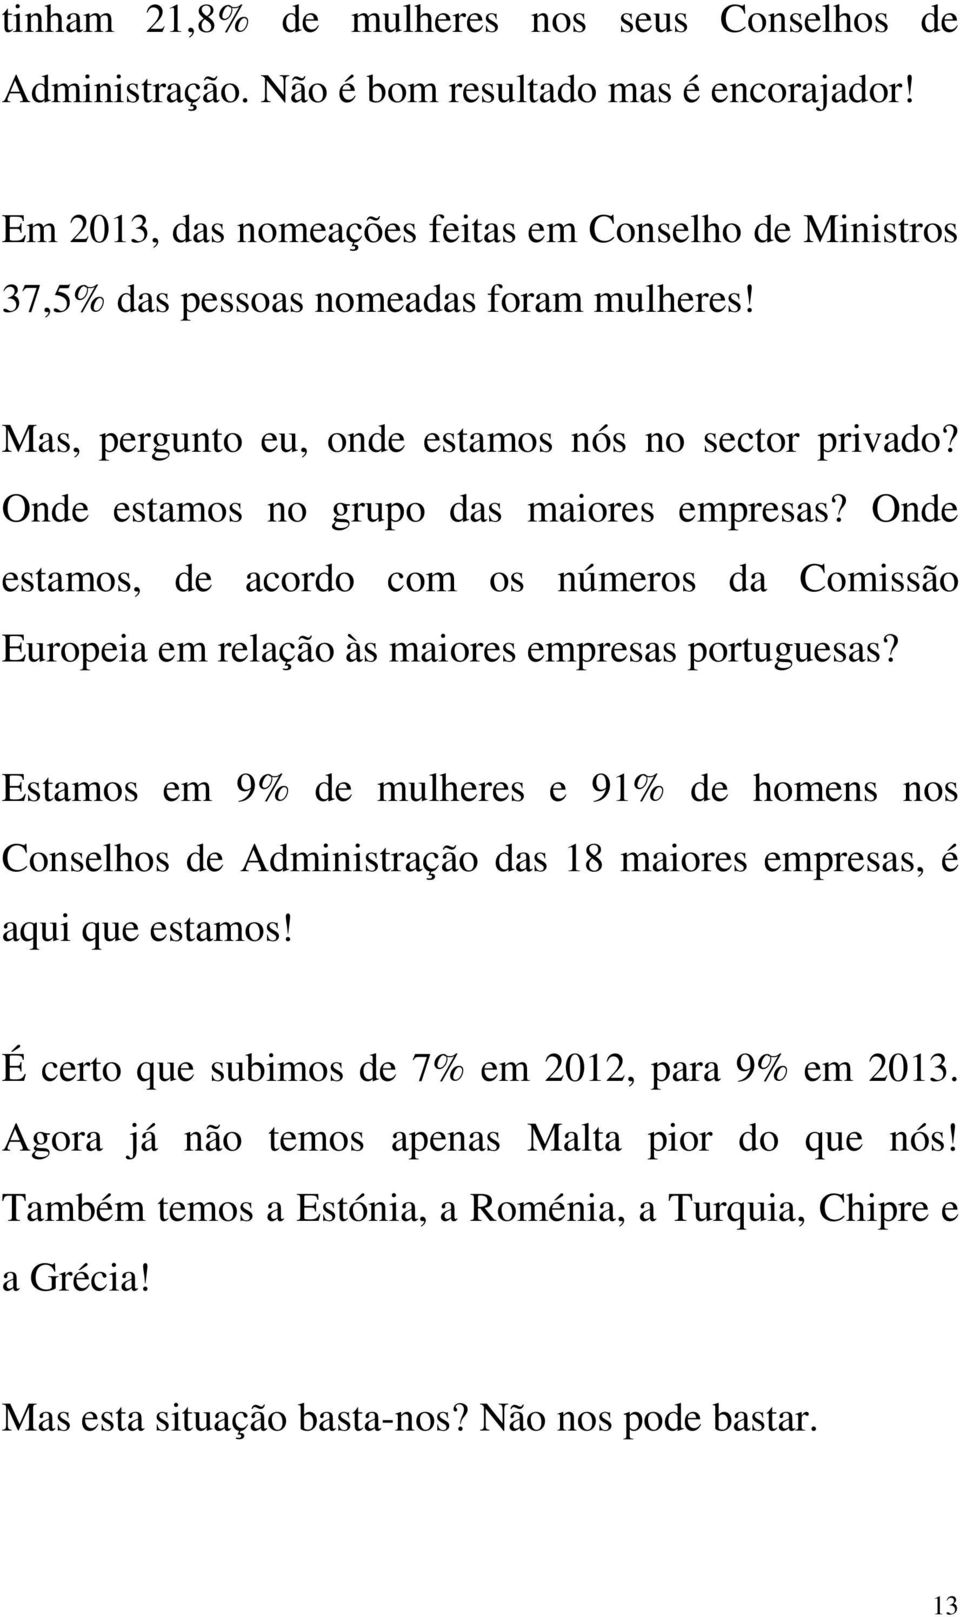 Onde estamos no grupo das maiores empresas? Onde estamos, de acordo com os números da Comissão Europeia em relação às maiores empresas portuguesas?